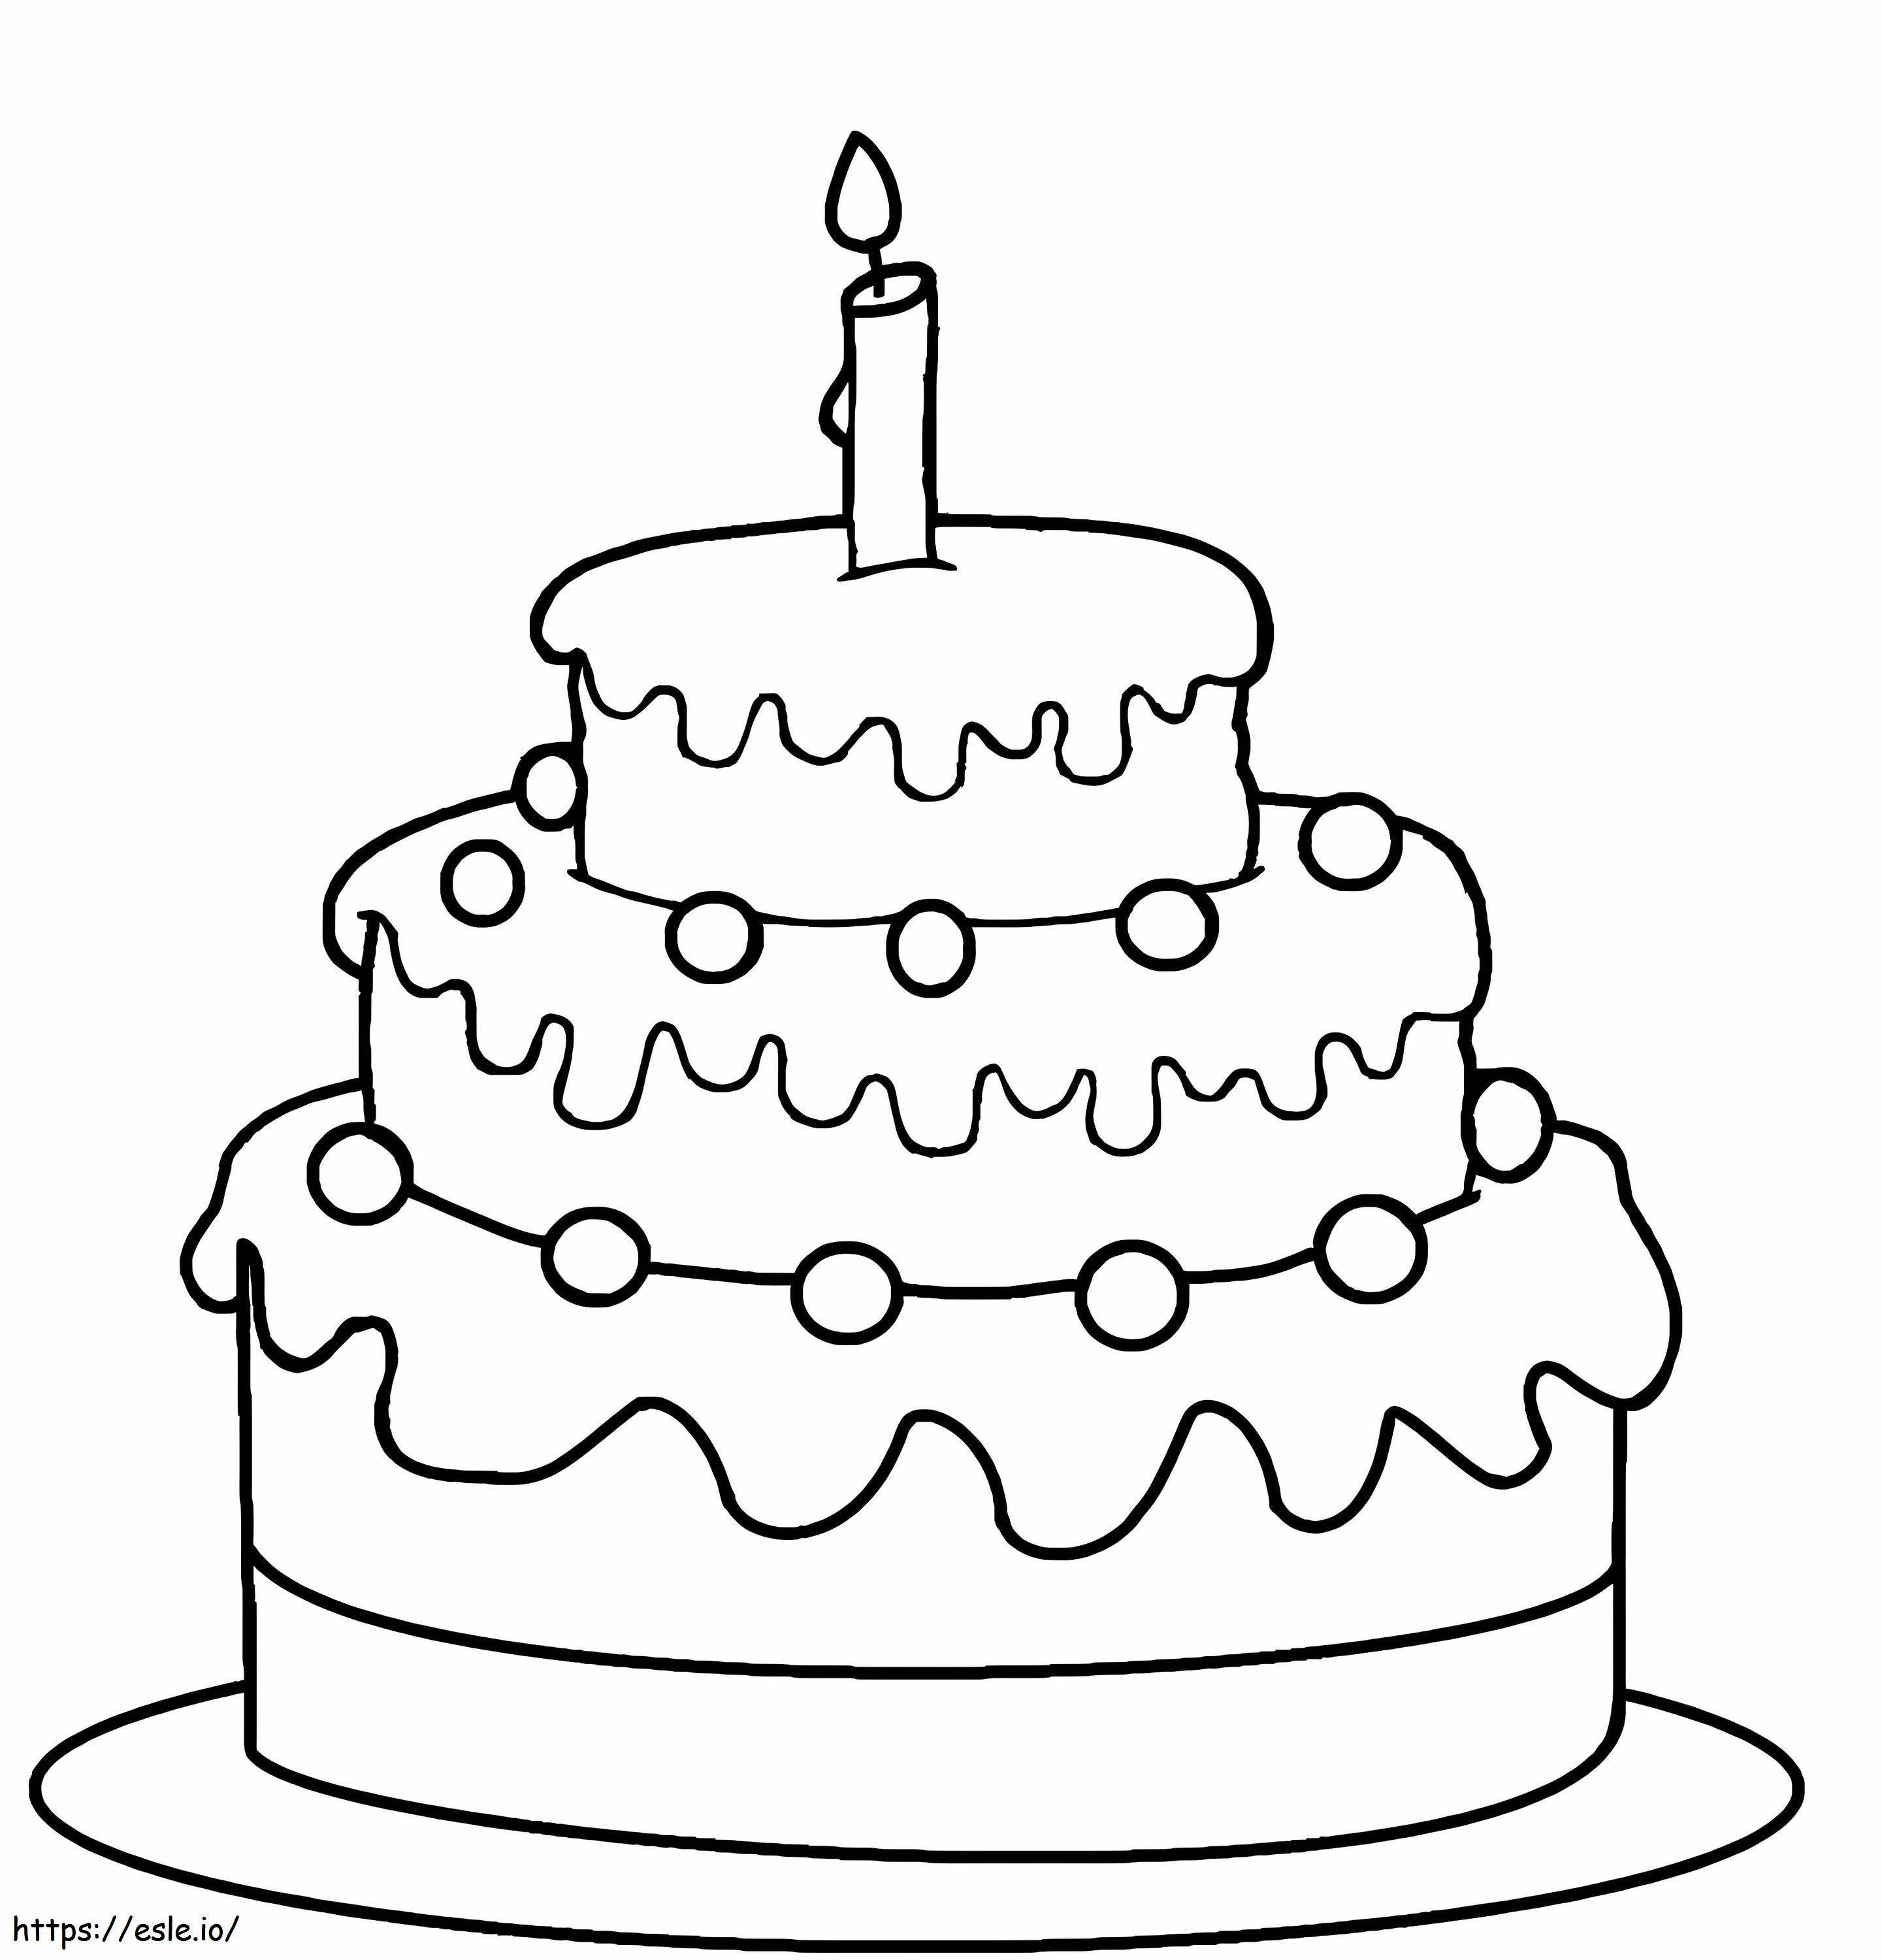 Normál születésnapi torta kifestő